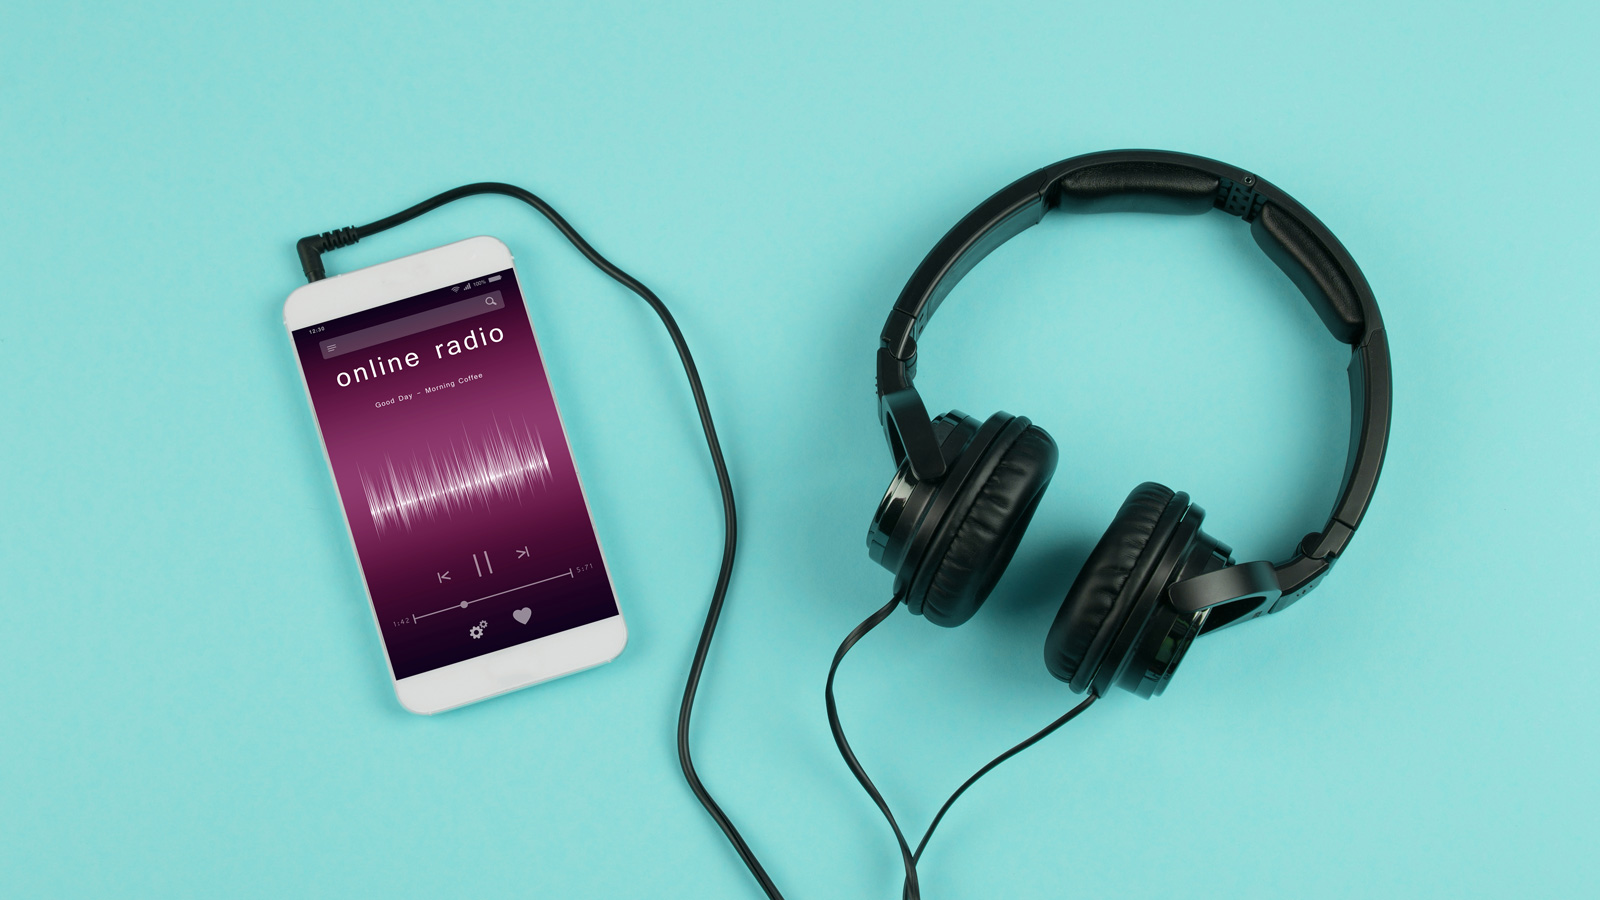 Mit dem Smartphone Radio, Musik und Podcast hören (Symbolbild)